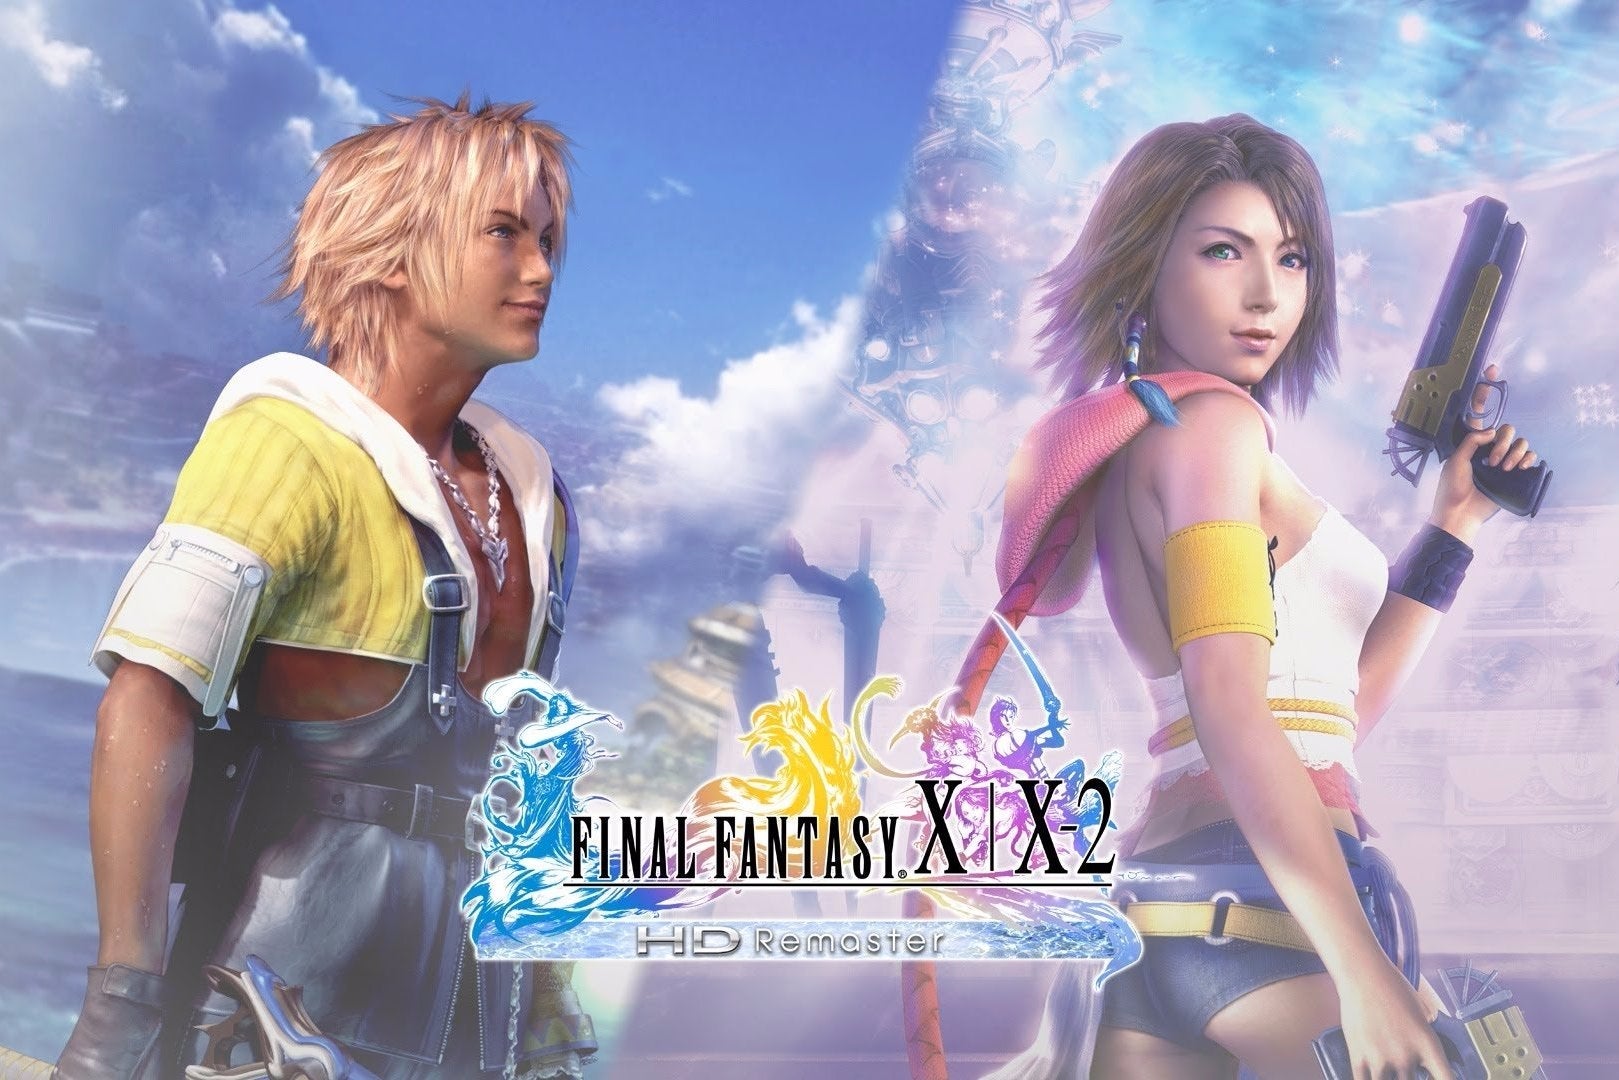 Imagem para Vê o trailer de lançamento de Final Fantasy X/X-2 HD Remaster